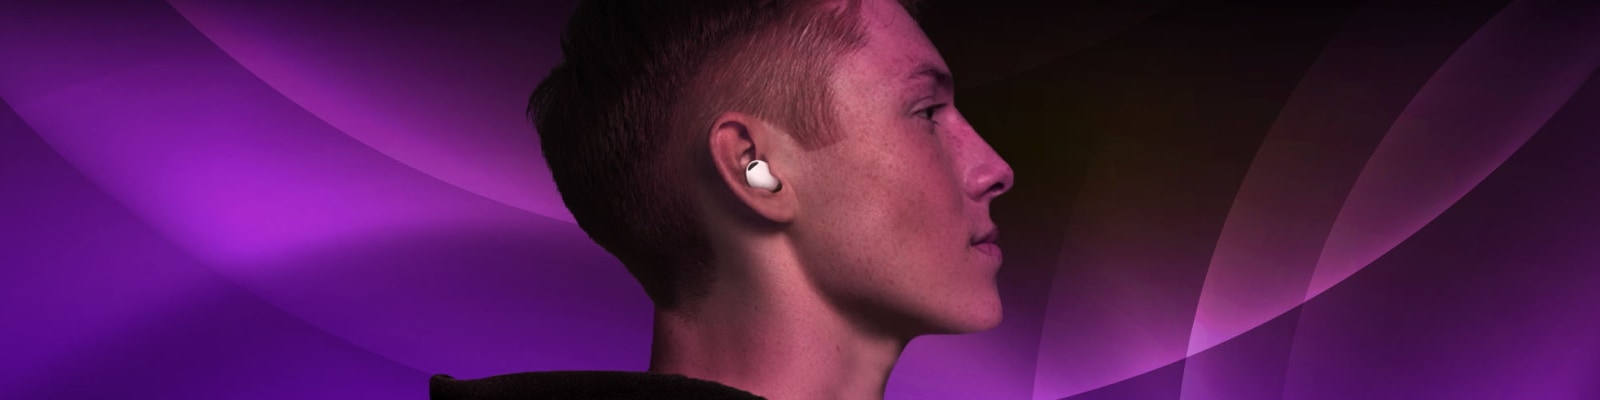 Afhankelijk lading Uitwerpselen Draadloze bluetooth oortjes: zo kies je de juiste oordopjes | Samsung & You  | Samsung Nederland